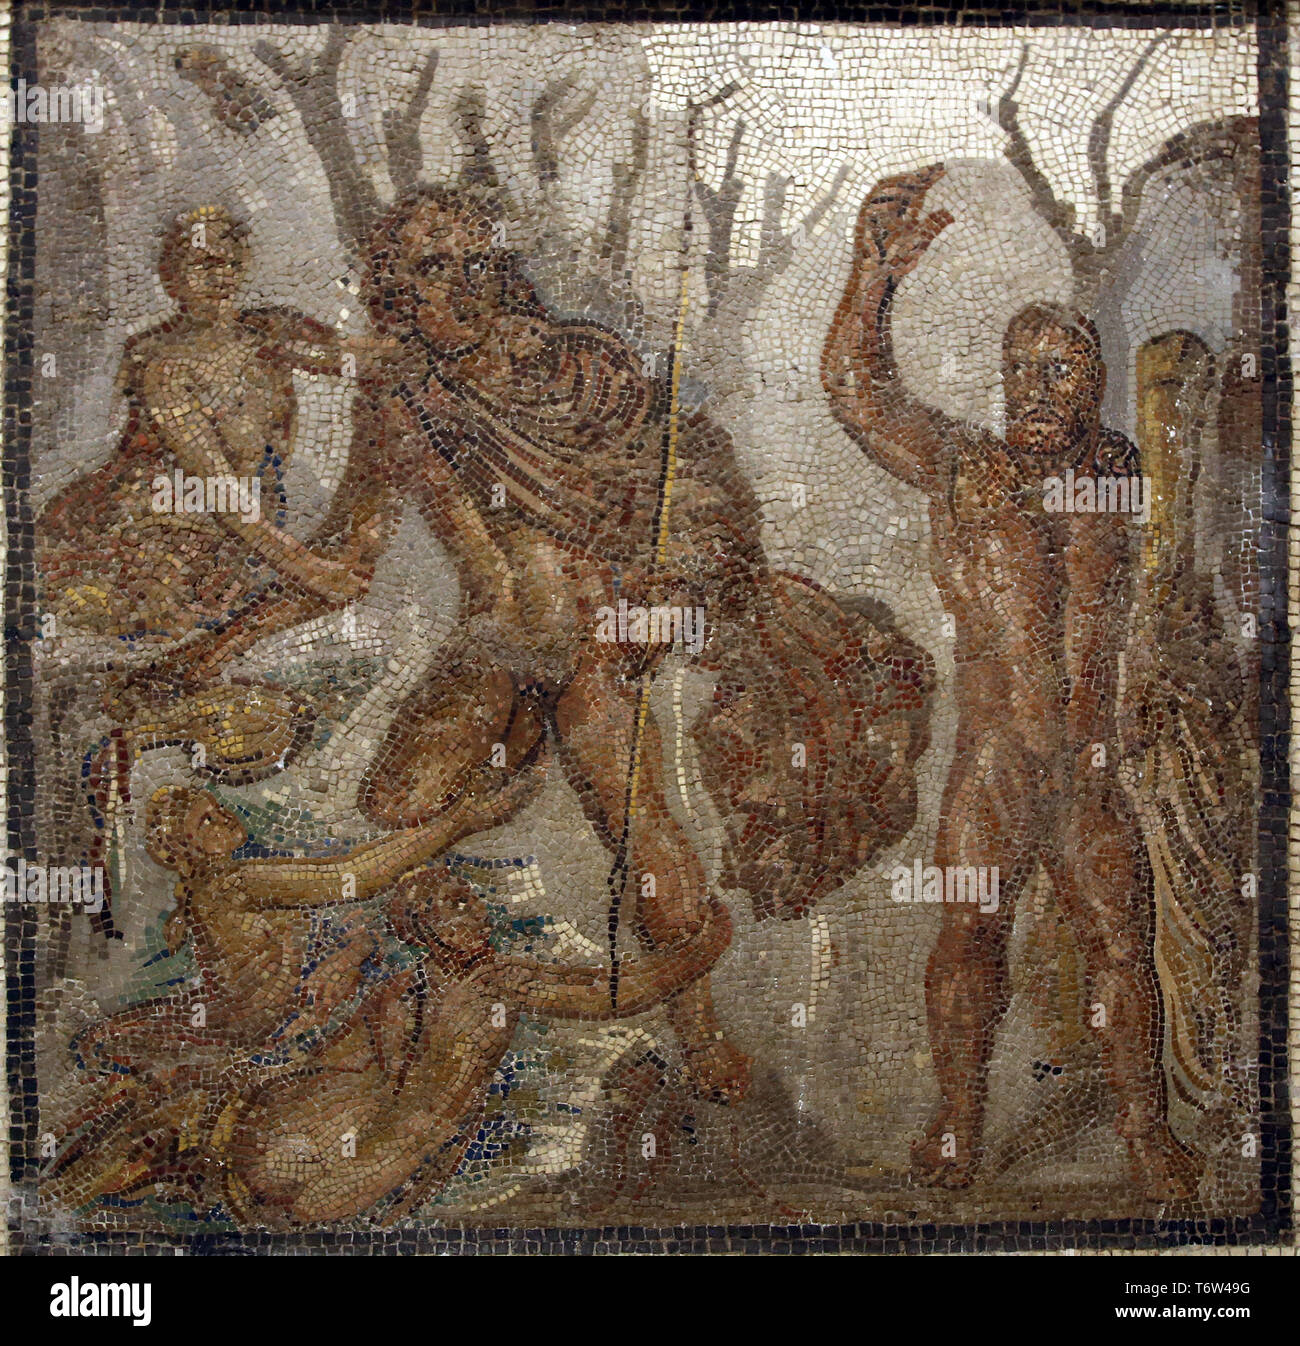 Entführung von Hylas. Römische Mosaik. 2. Jahrhundert. Italica, Andalusien, Spanien. Das archäologische Museum von Sevilla. Spanien. Stockfoto